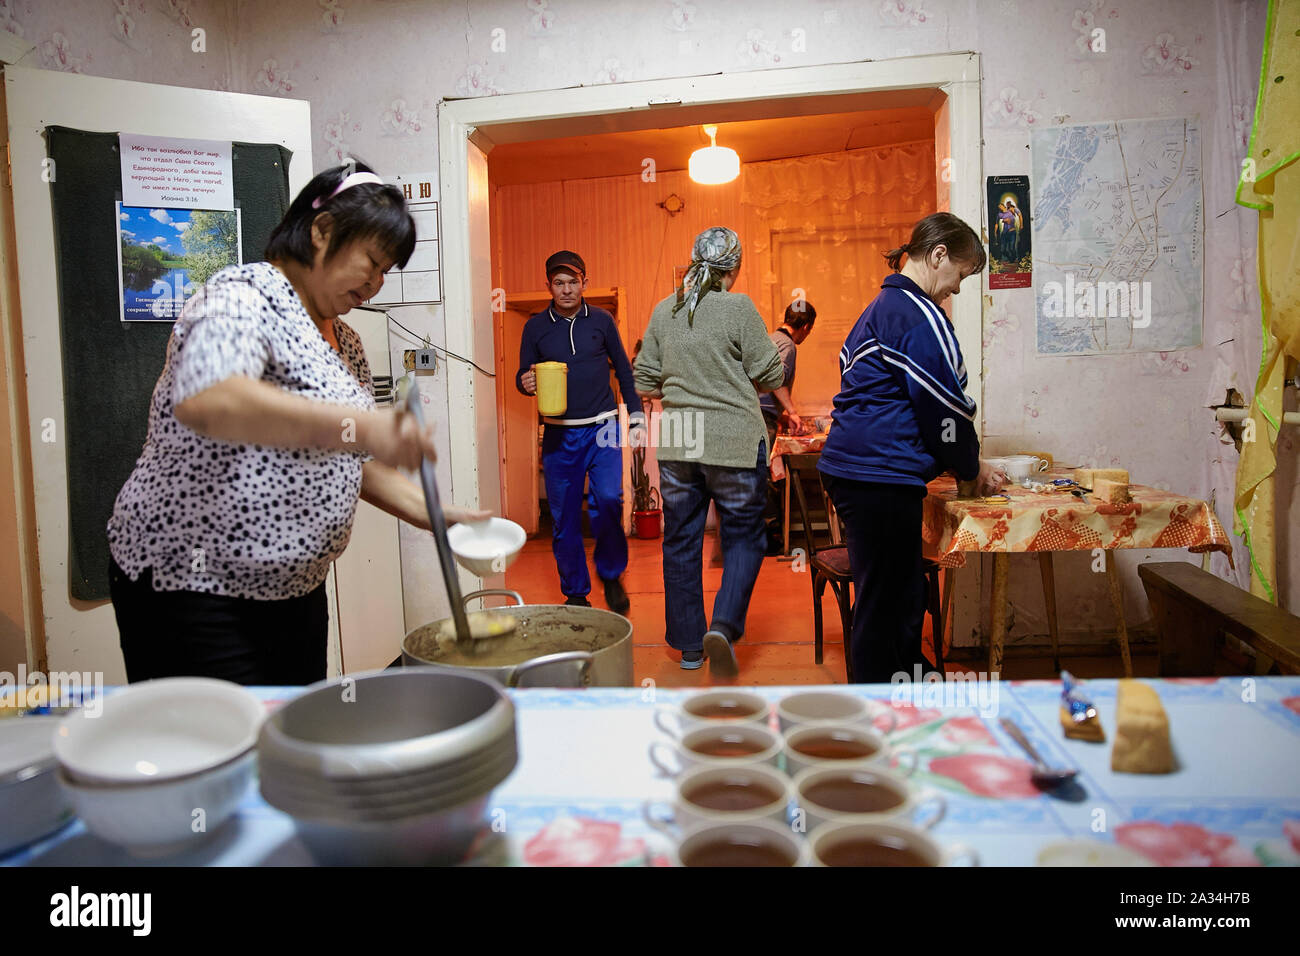 Russland Jakutsk Kirche Menschen bereiten Essen für Obdachlose1-02-2013 Foto: Jaco Klamer Stockfoto